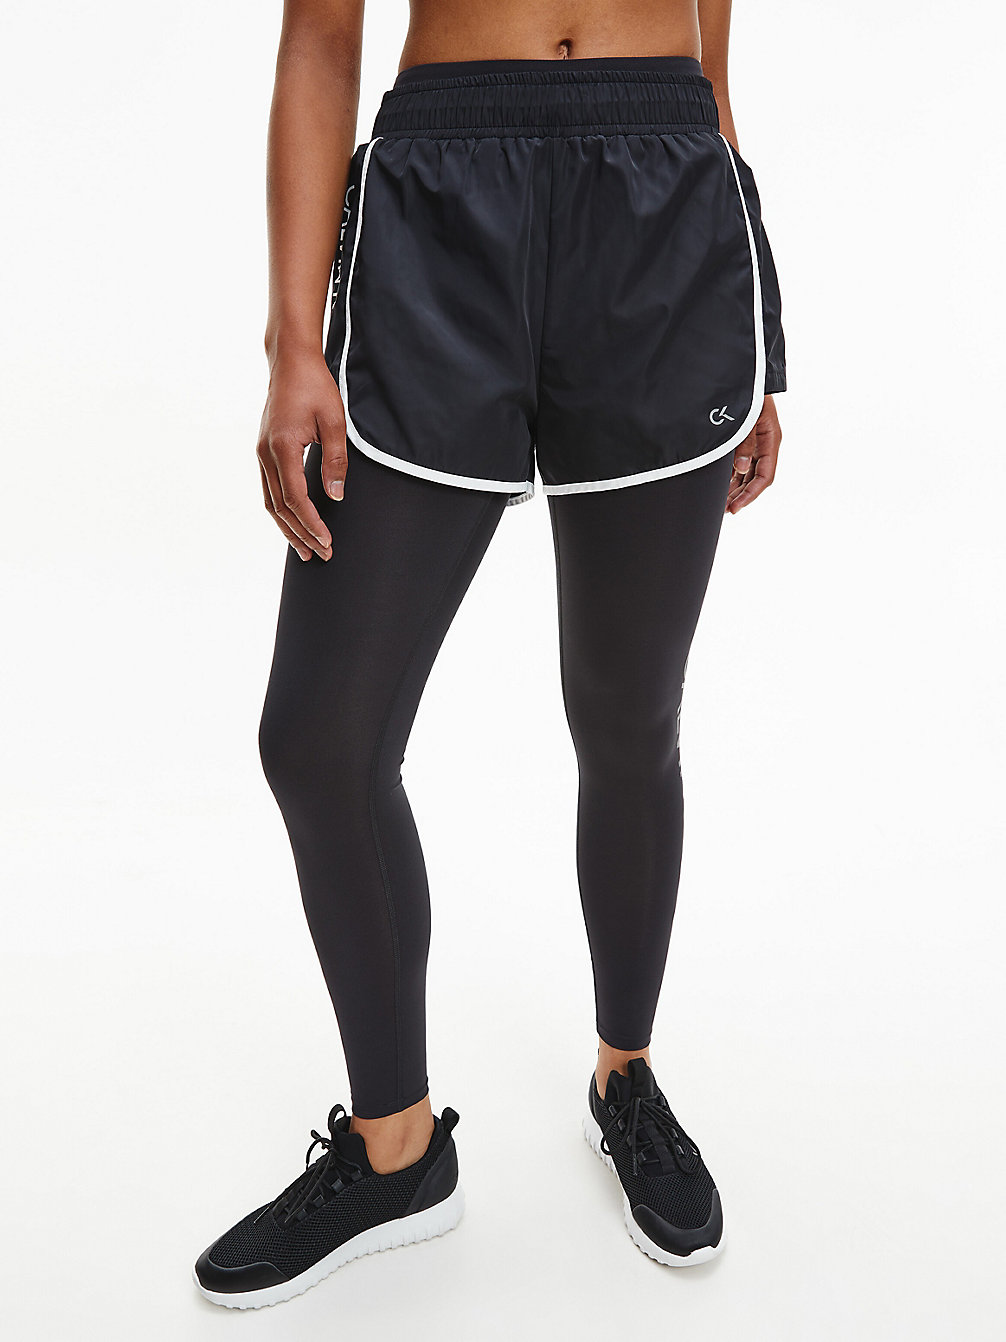 CK BLACK/BRIGHT WHITE Gym Shorts undefined women Calvin Klein